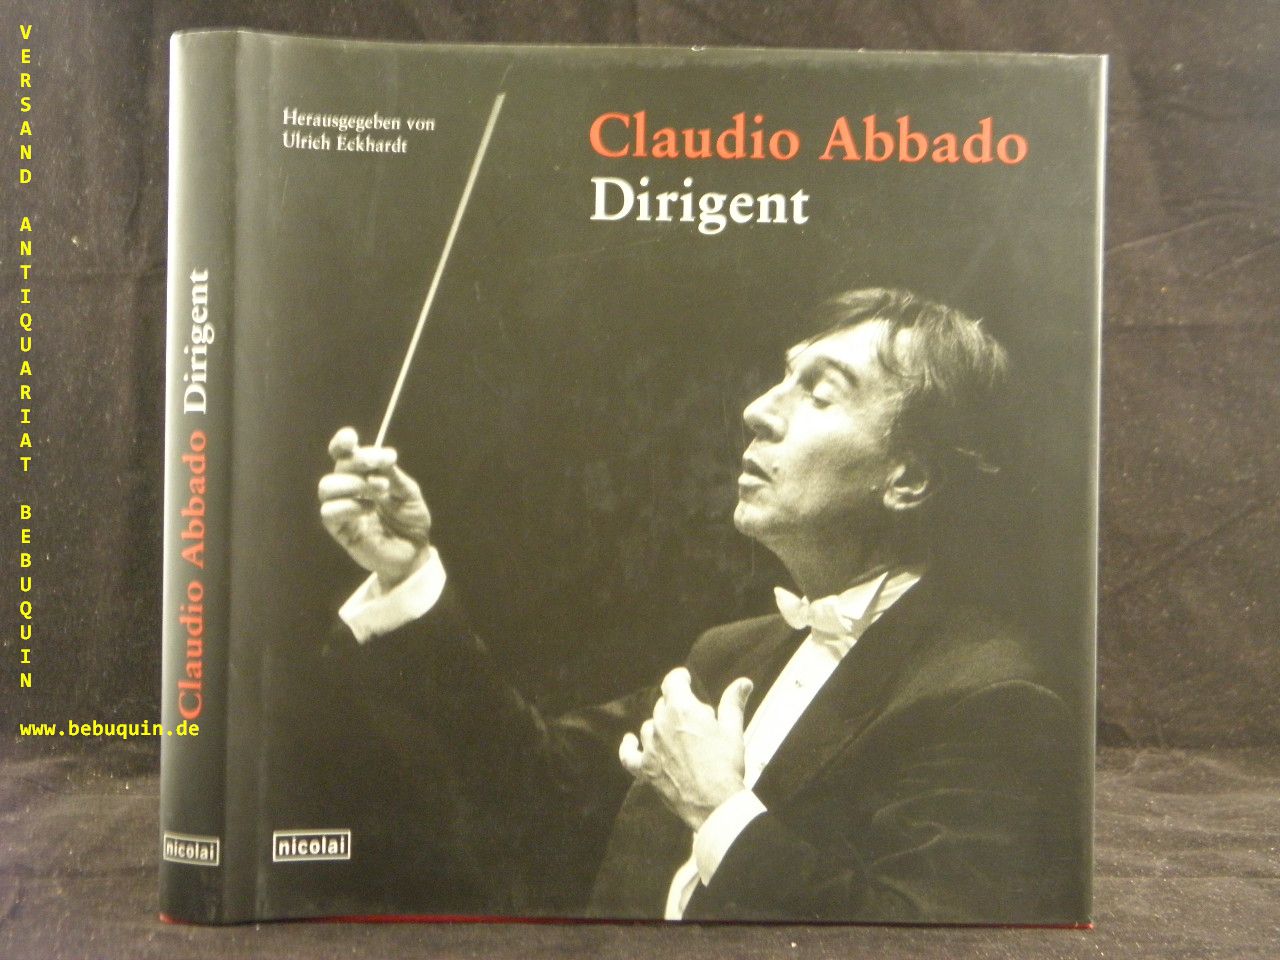 ABBADO.-  ECKHARDT, Ulrich: - (Hrsg.) Claudio Abbado. Dirigent.